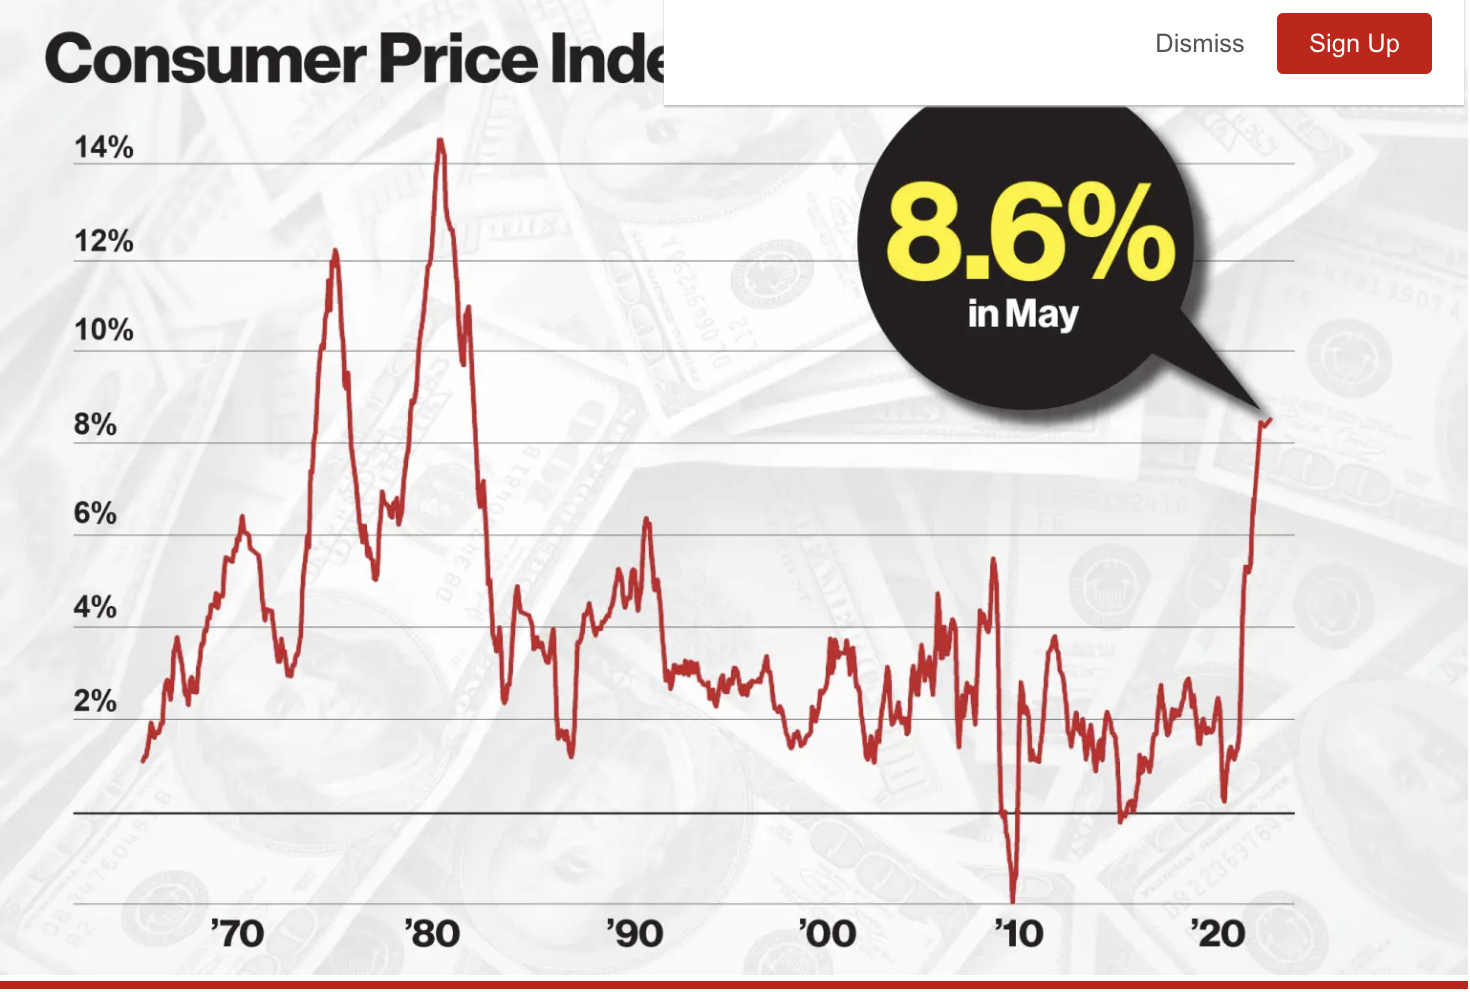 ViMoney: Chỉ số giá sản xuất giảm trong khi Chỉ số giá tiêu dùng của Trung Quốc tăng trong tháng 5/2022